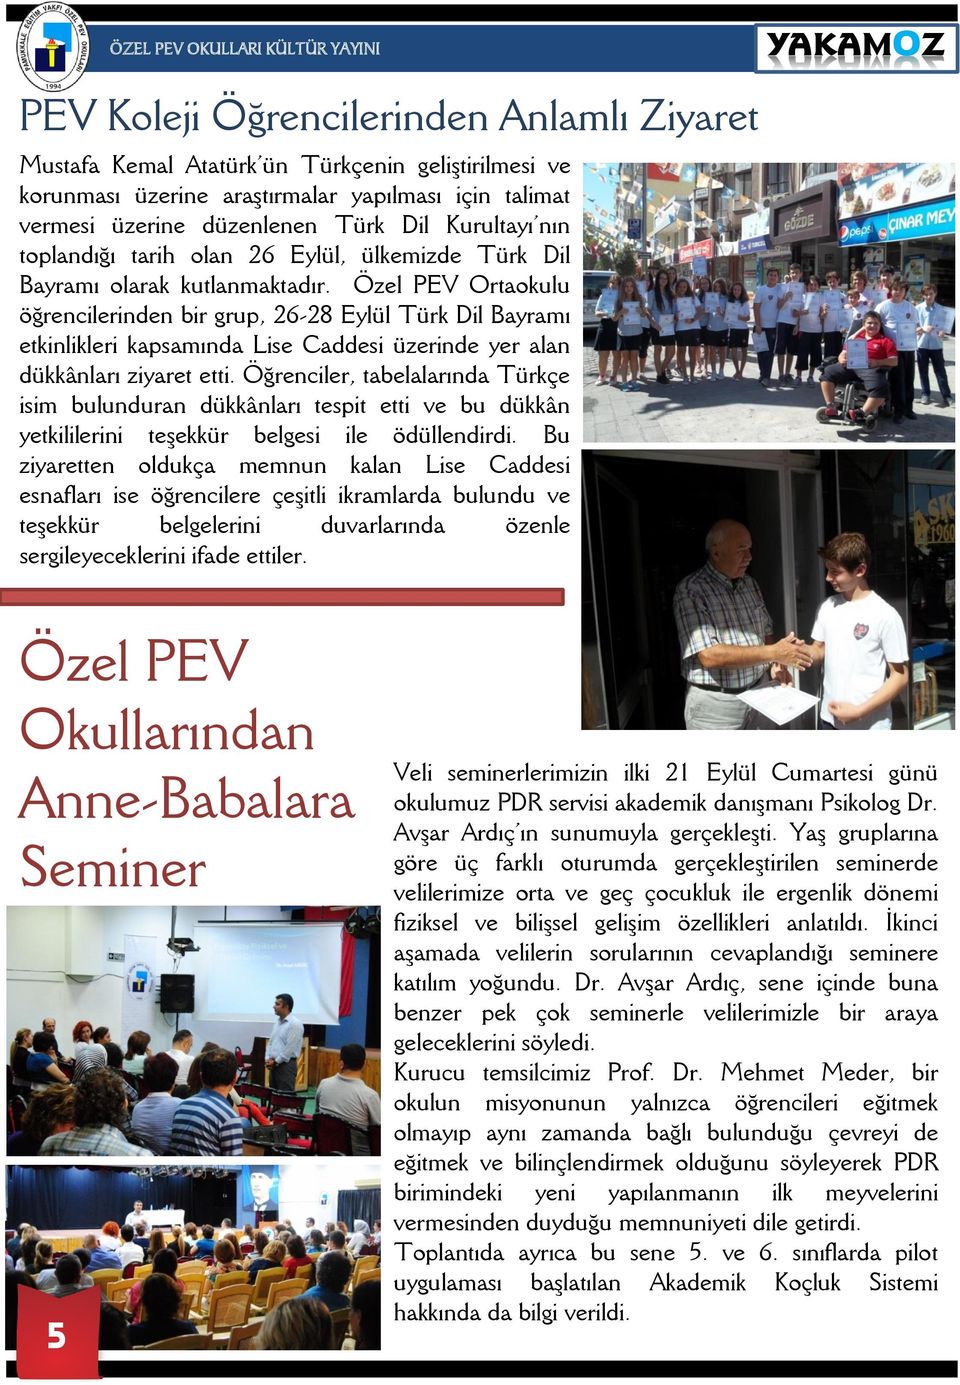 Özel PEV Ortaokulu öğrencilerinden bir grup, 26-28 Eylül Türk Dil Bayramı etkinlikleri kapsamında Lise Caddesi üzerinde yer alan dükkânları ziyaret etti.